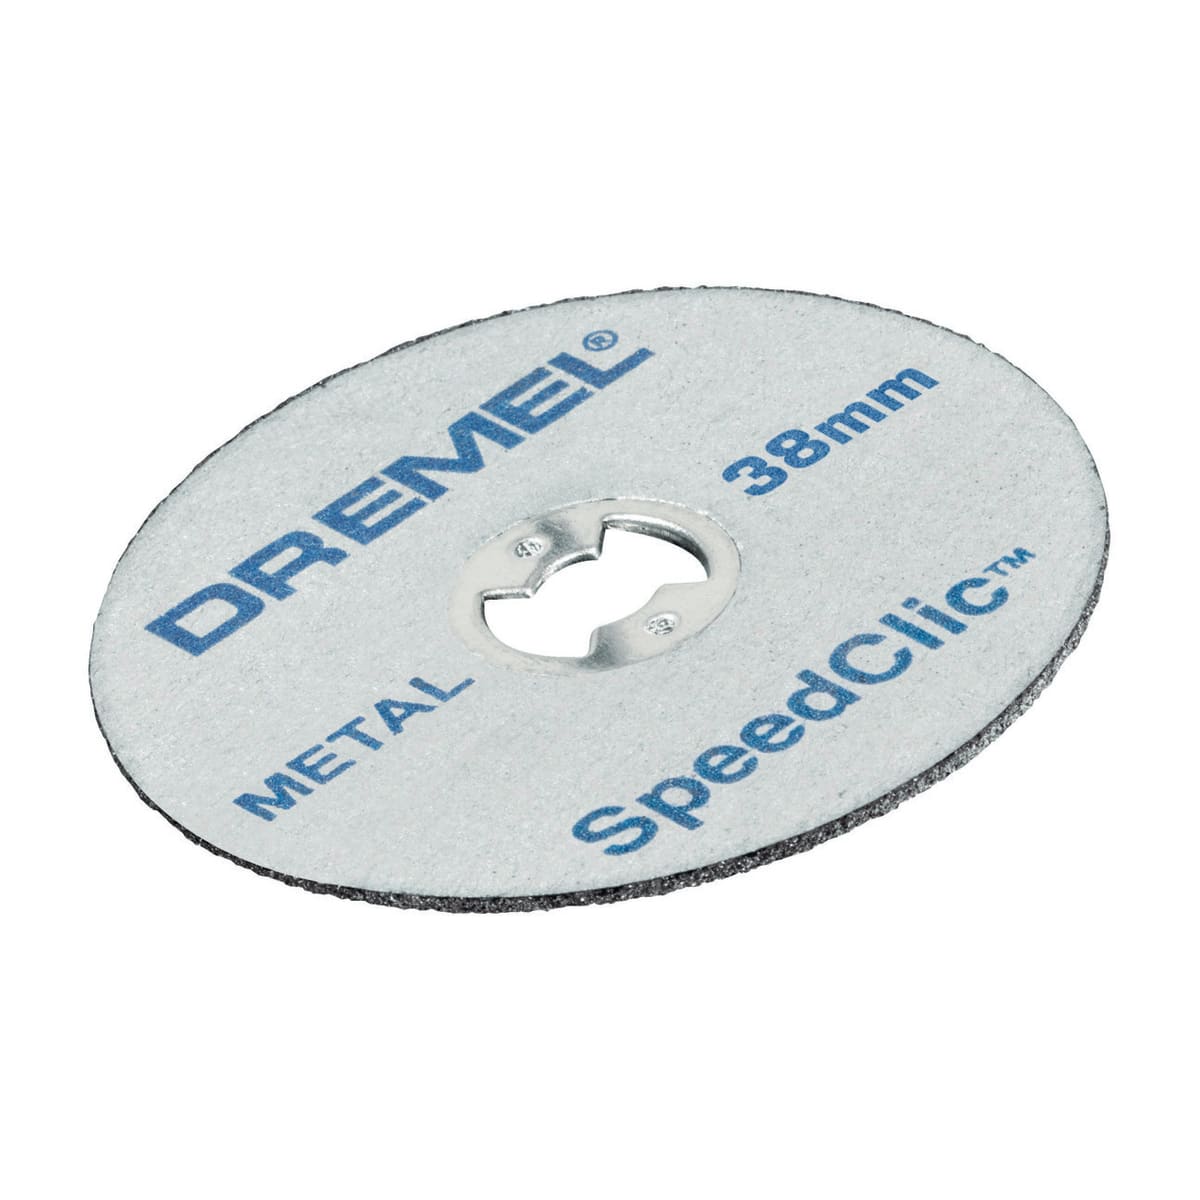 DREMEL SPEEDCLIC MODEL SC406 STARTER SET